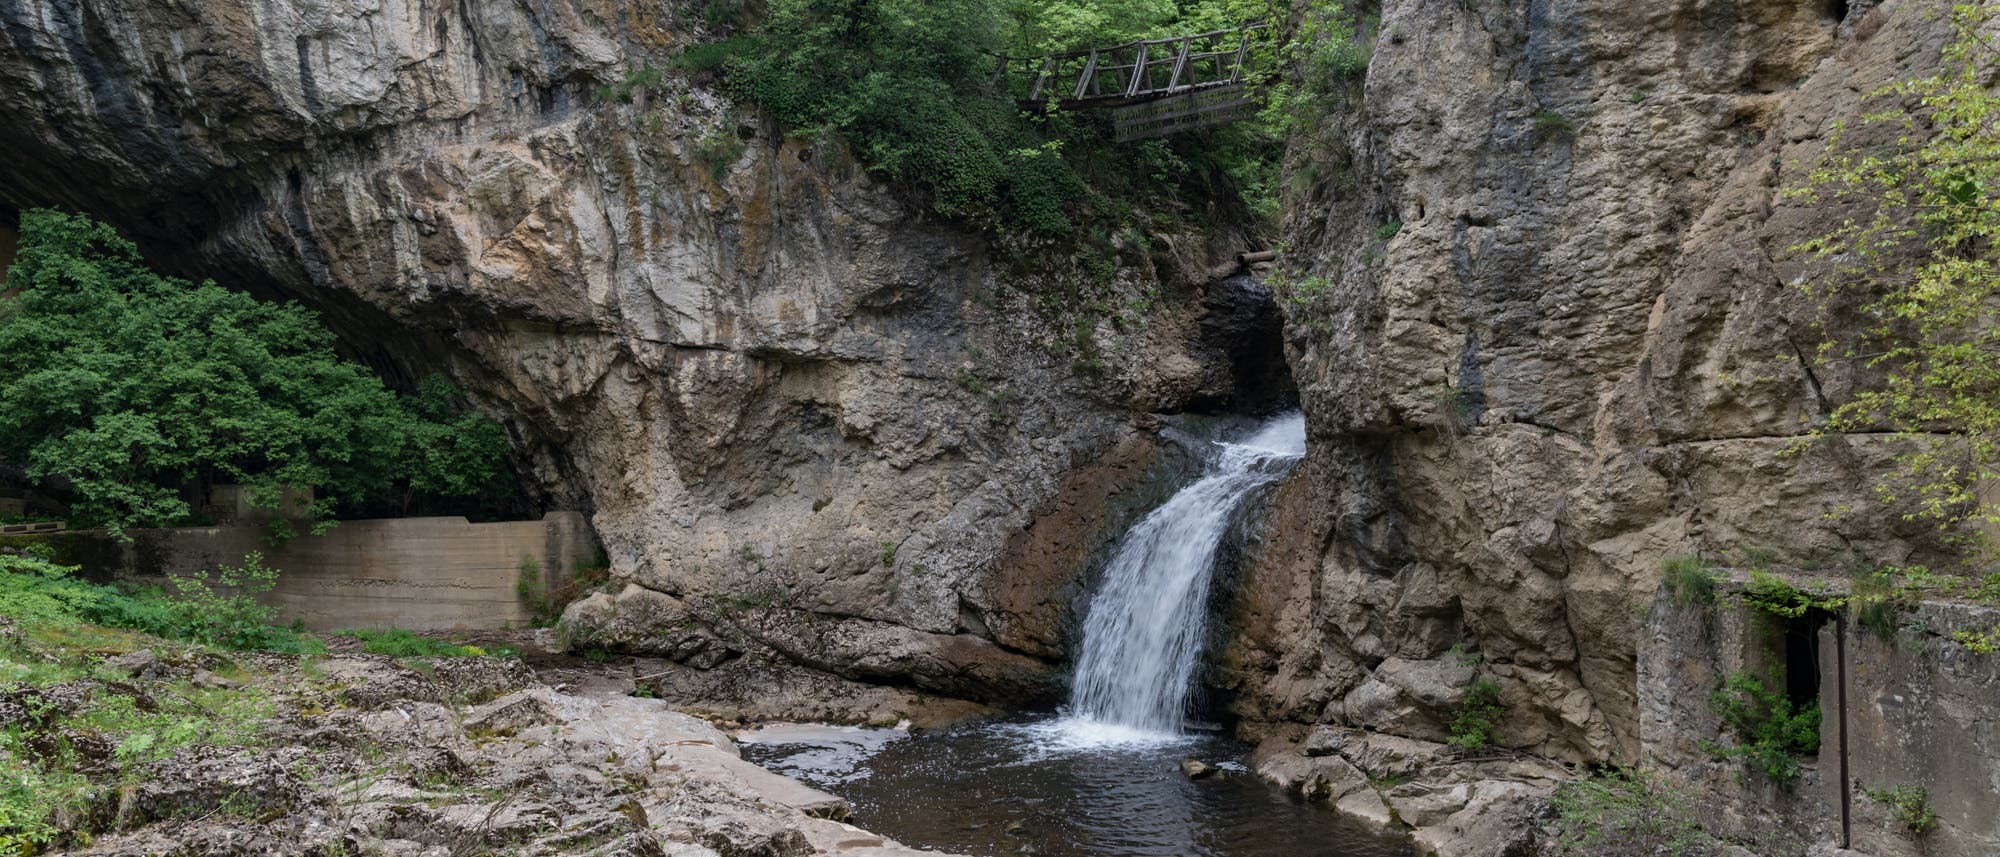 Wasserfall nahe der Bacho-Kiro-Höhle in Bulgarien, wo Paläoanthropologen den ältesten Nachweis für den anatomisch modernen Menschen in Europa entdeckten.